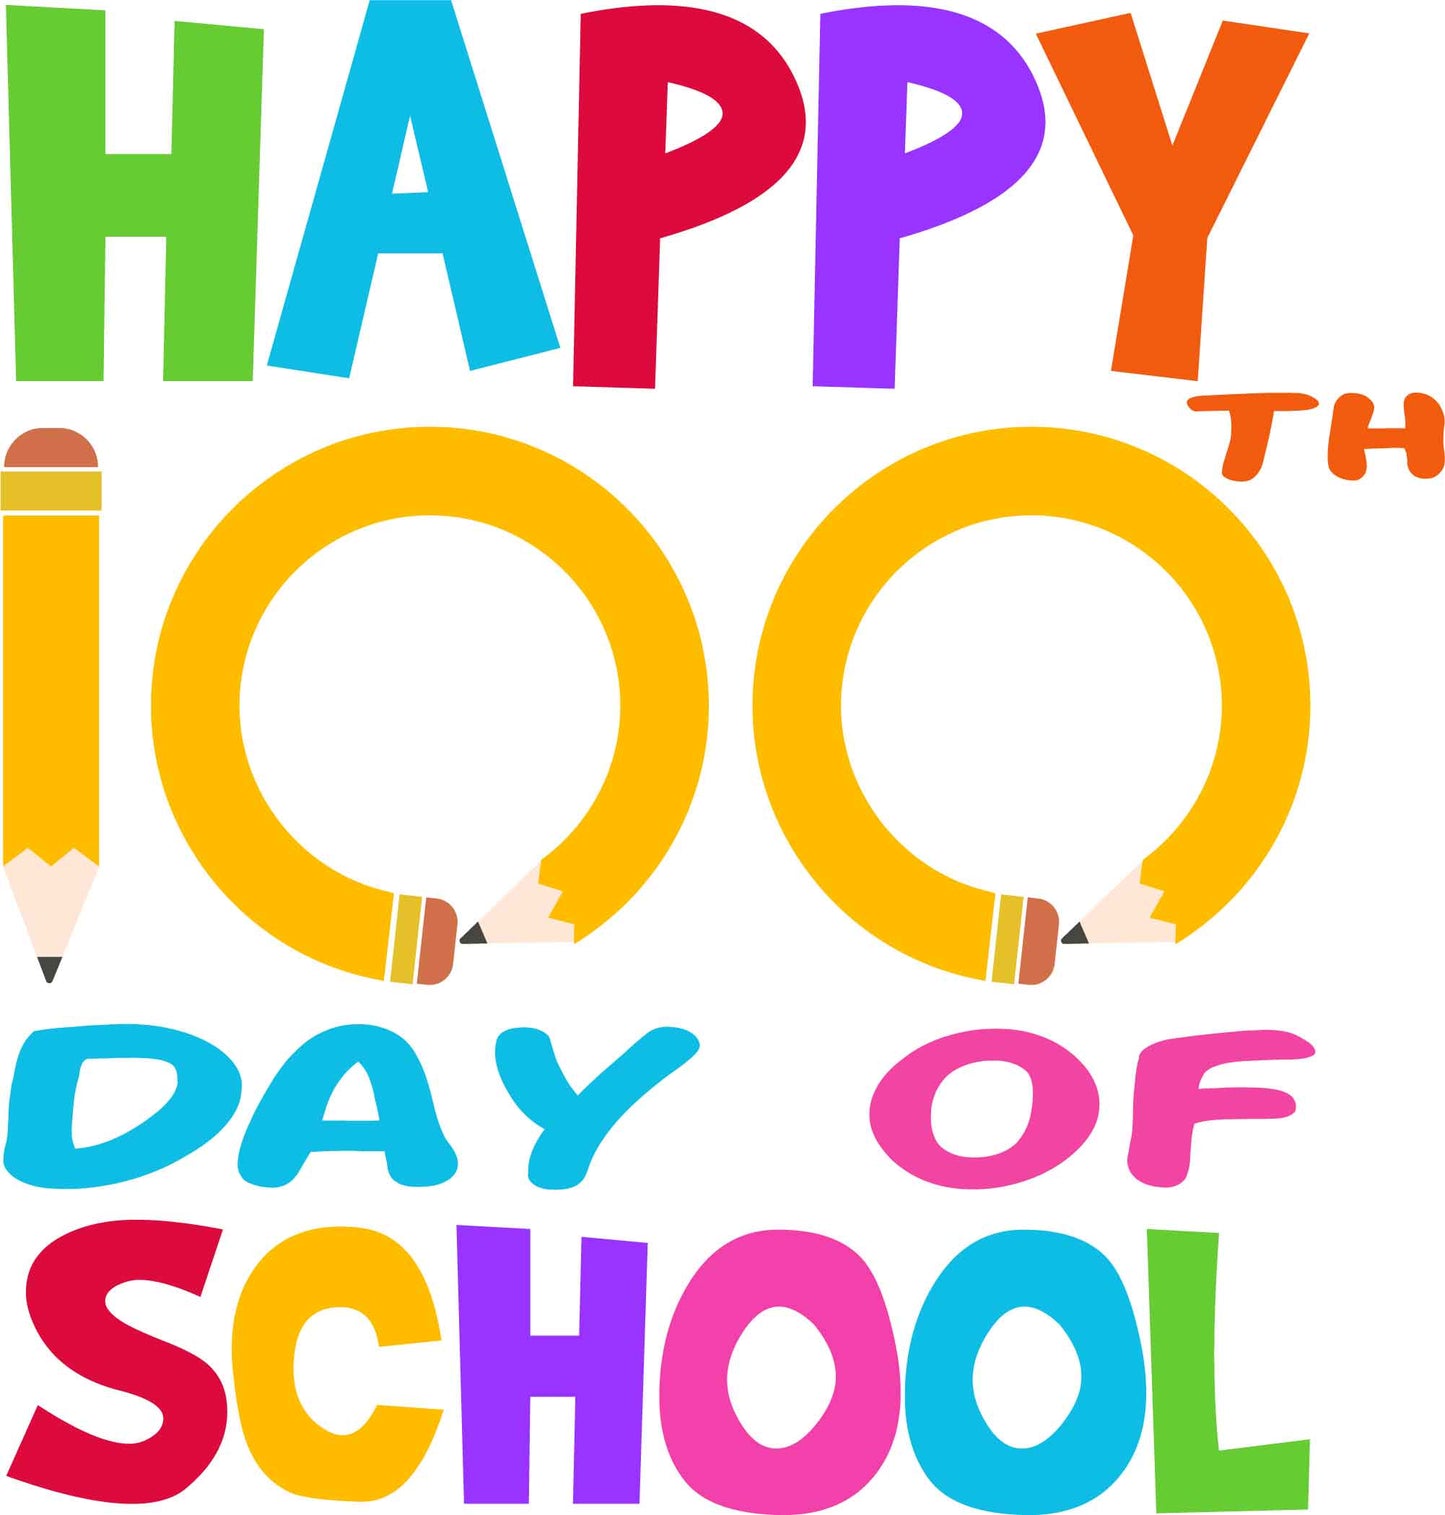 Happy 100th Day of School Pencil2 Design Transfer